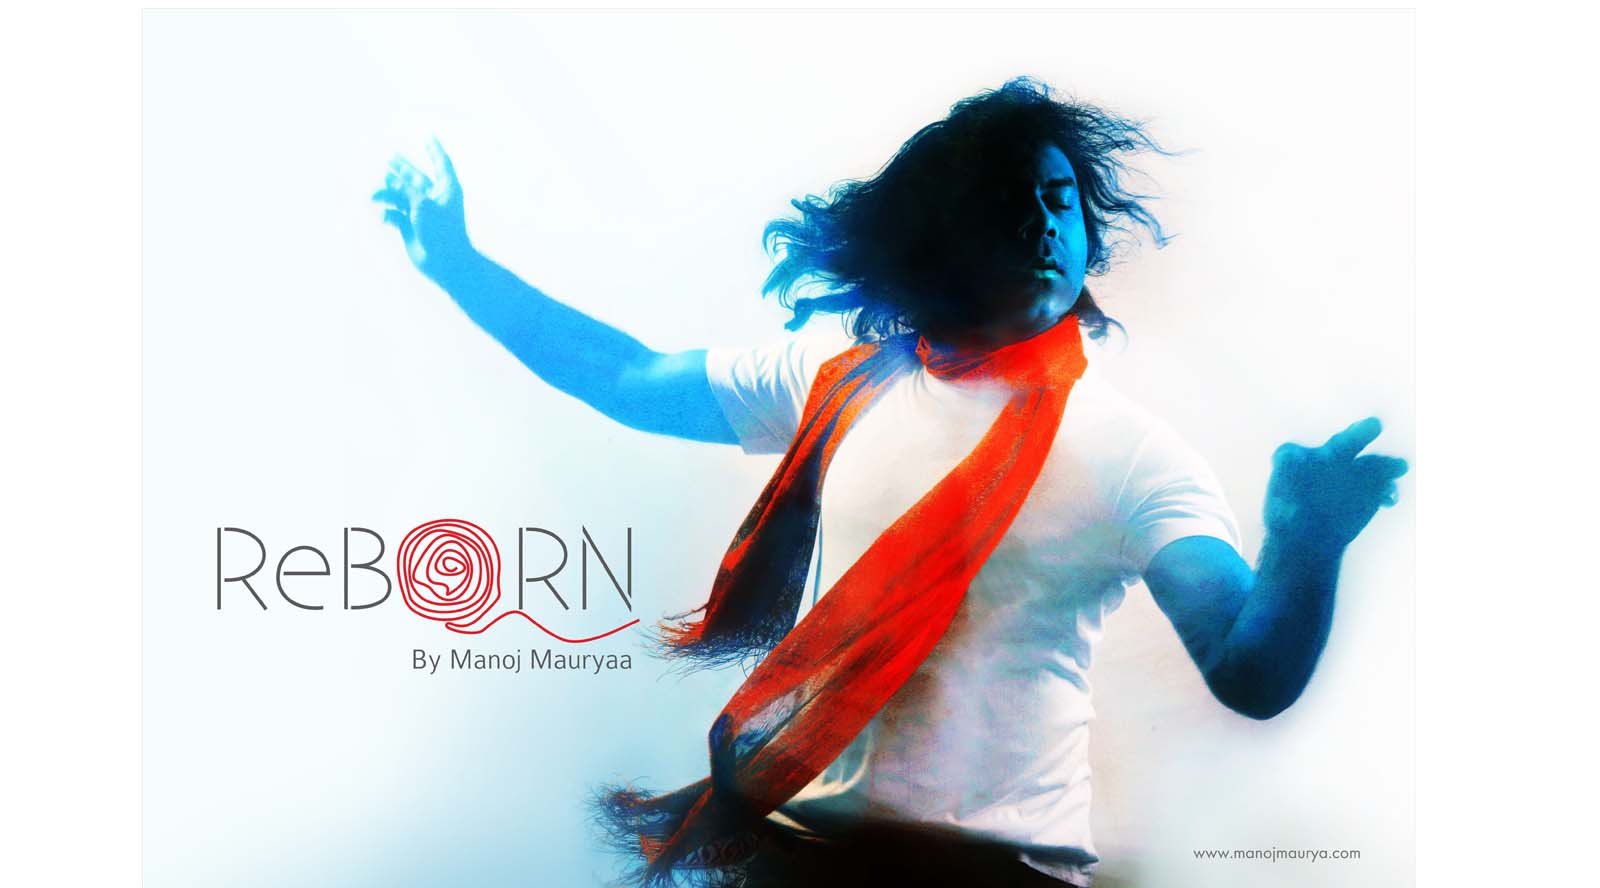 Reborn By Manoj Maurya